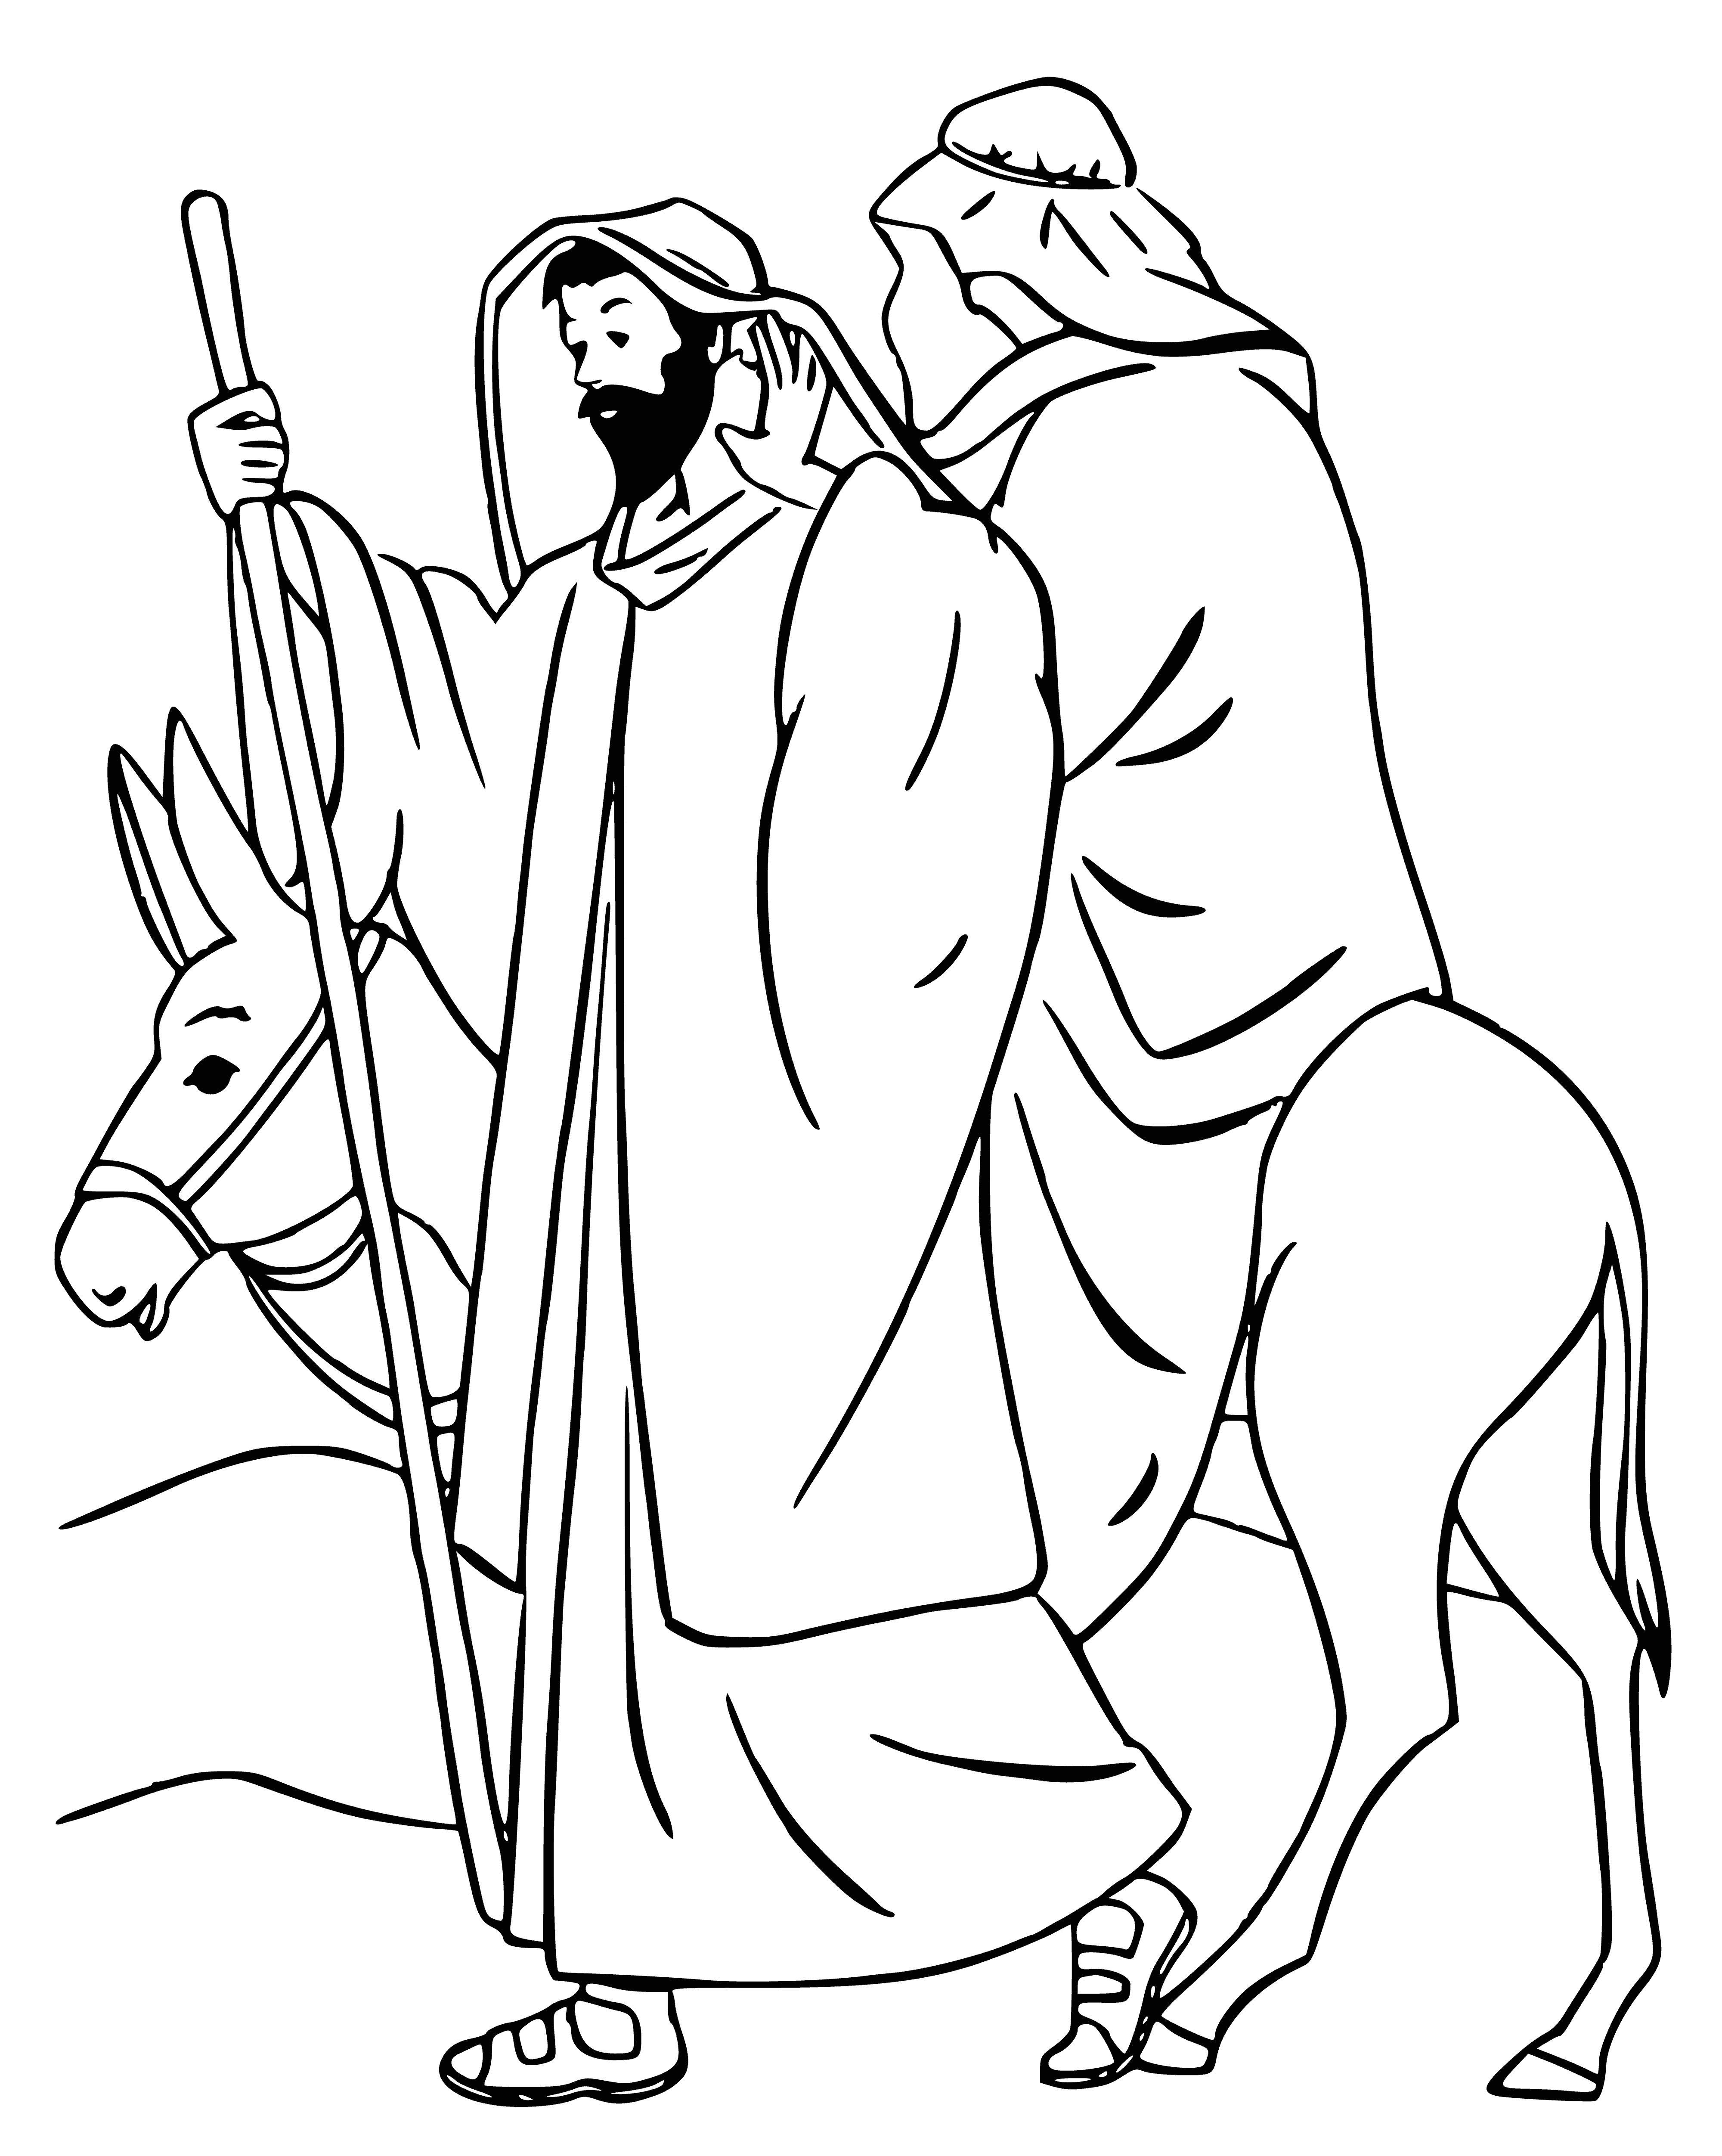 Shepherds kneel to Baby Jesus in manger, Virgin Mary and St Joseph behind, light from above shining on the scene. #Christmas #NativityScene